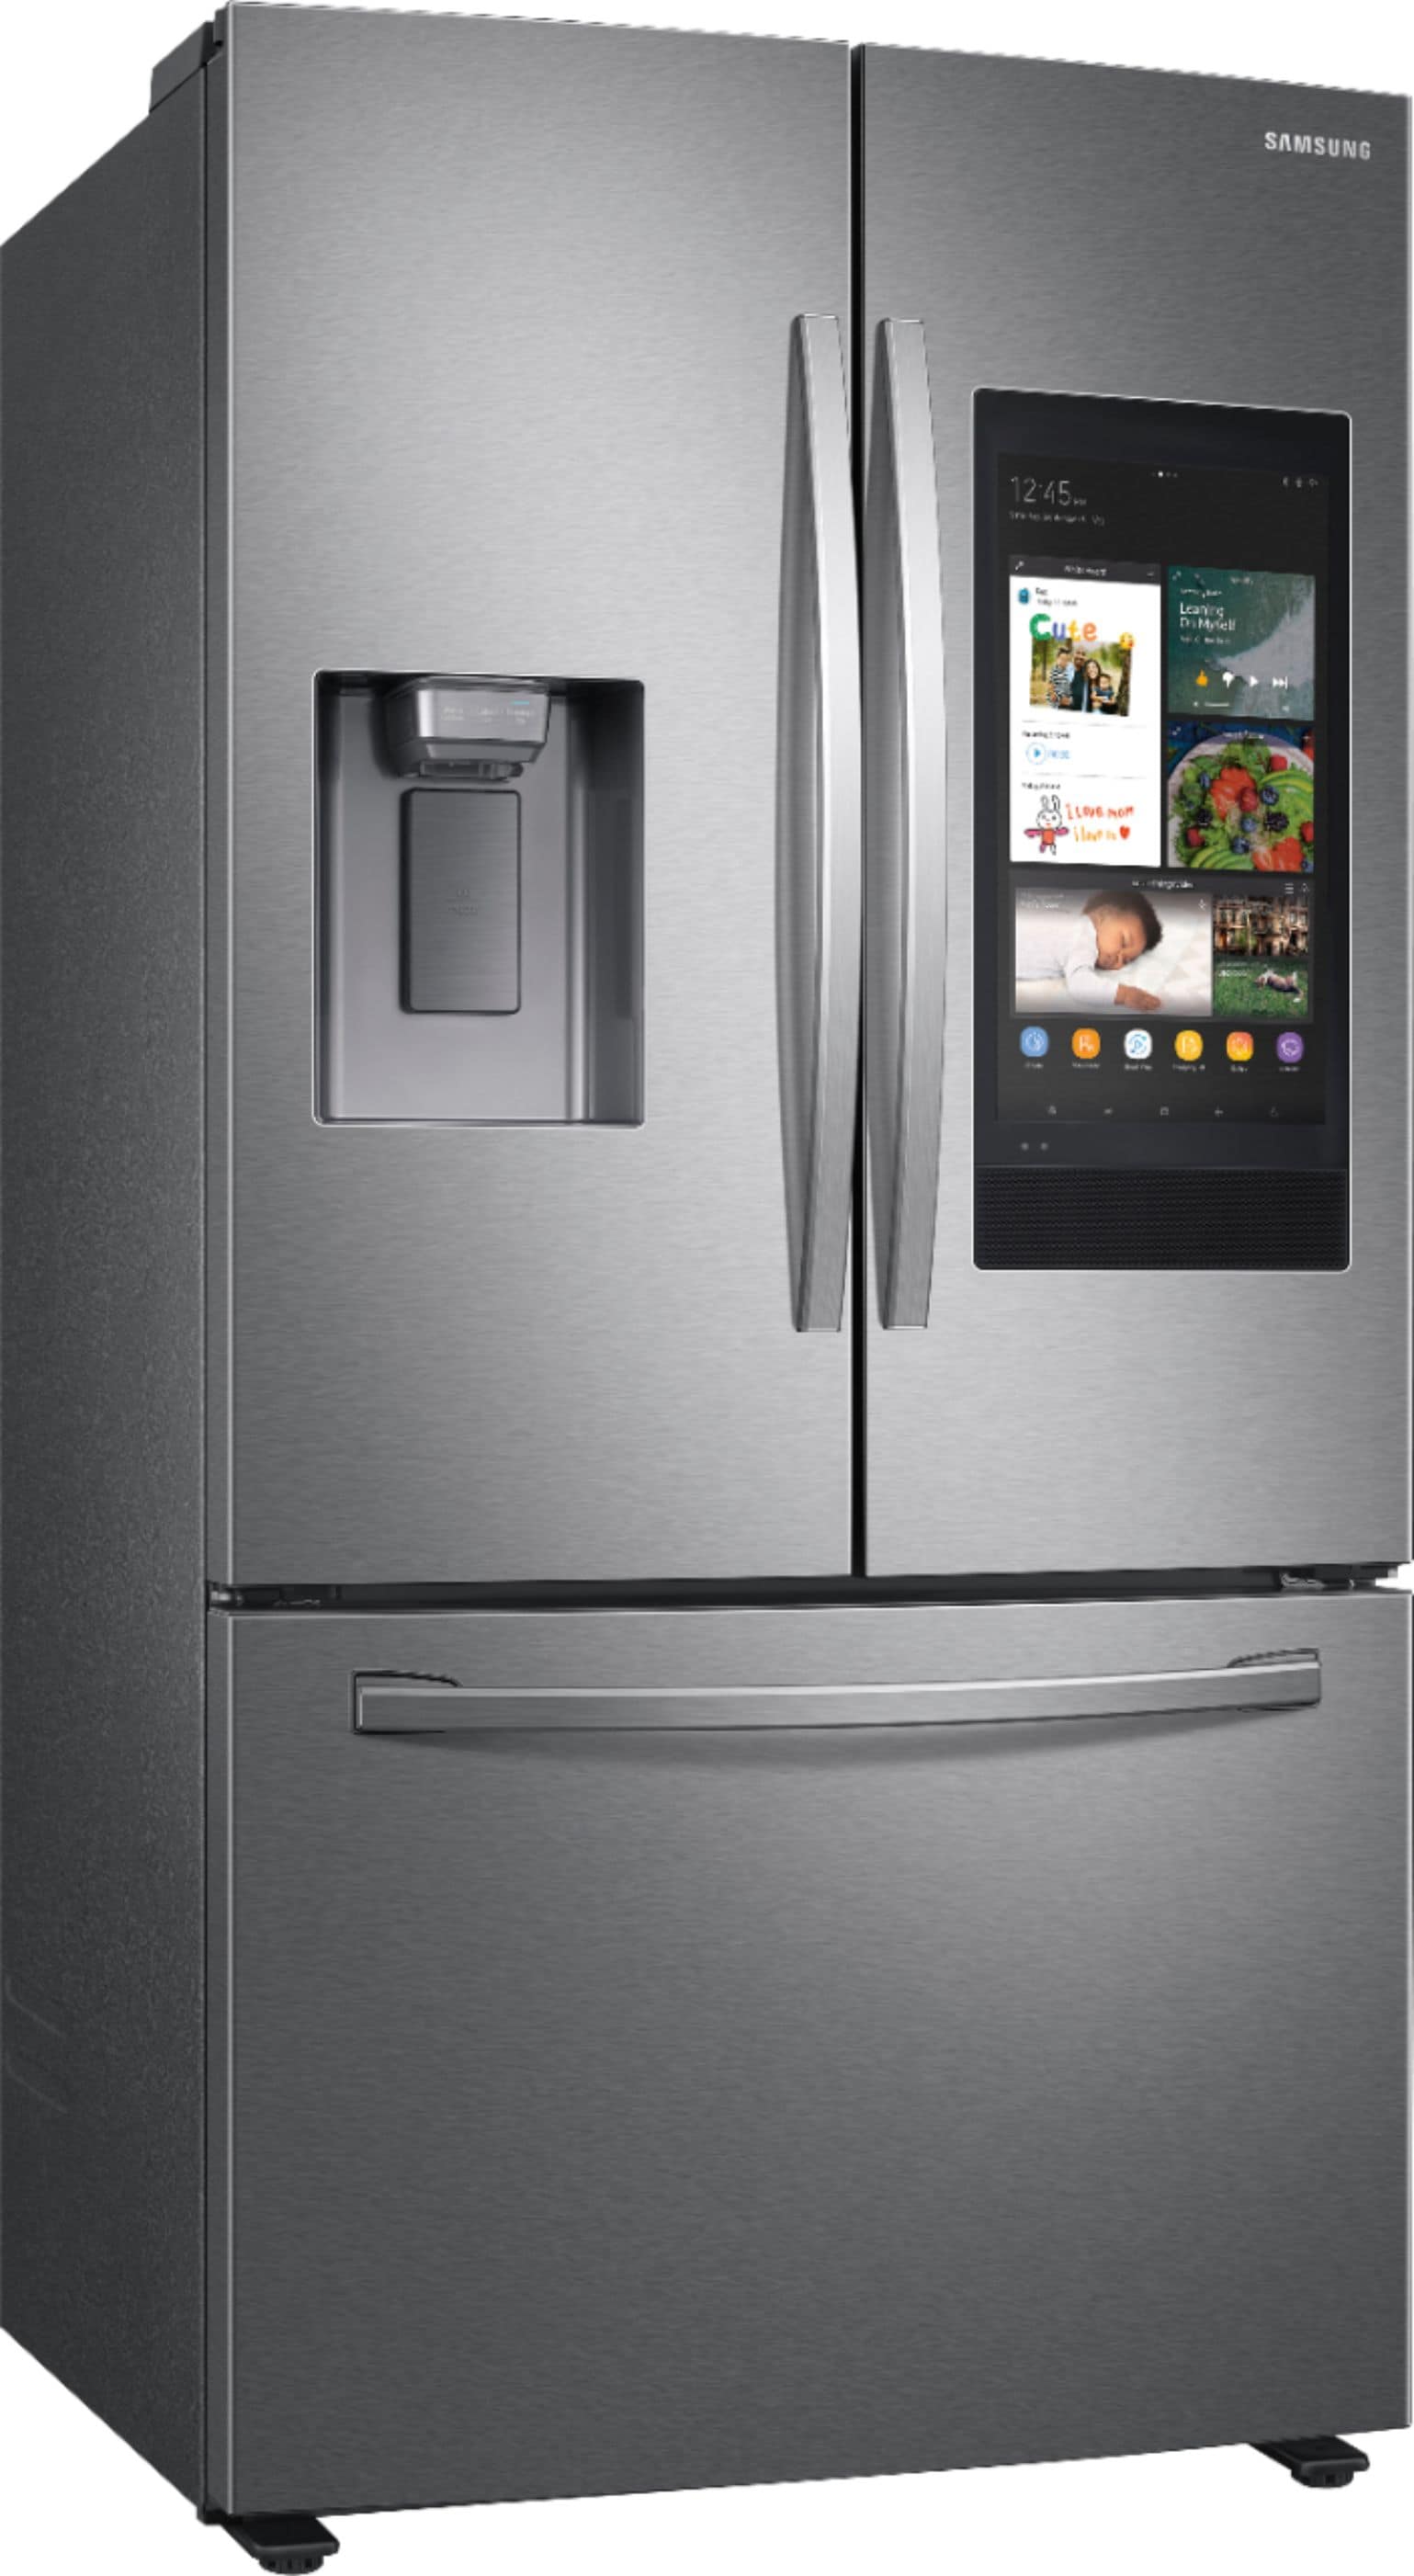 Refrigerator Pictures - KibrisPDR